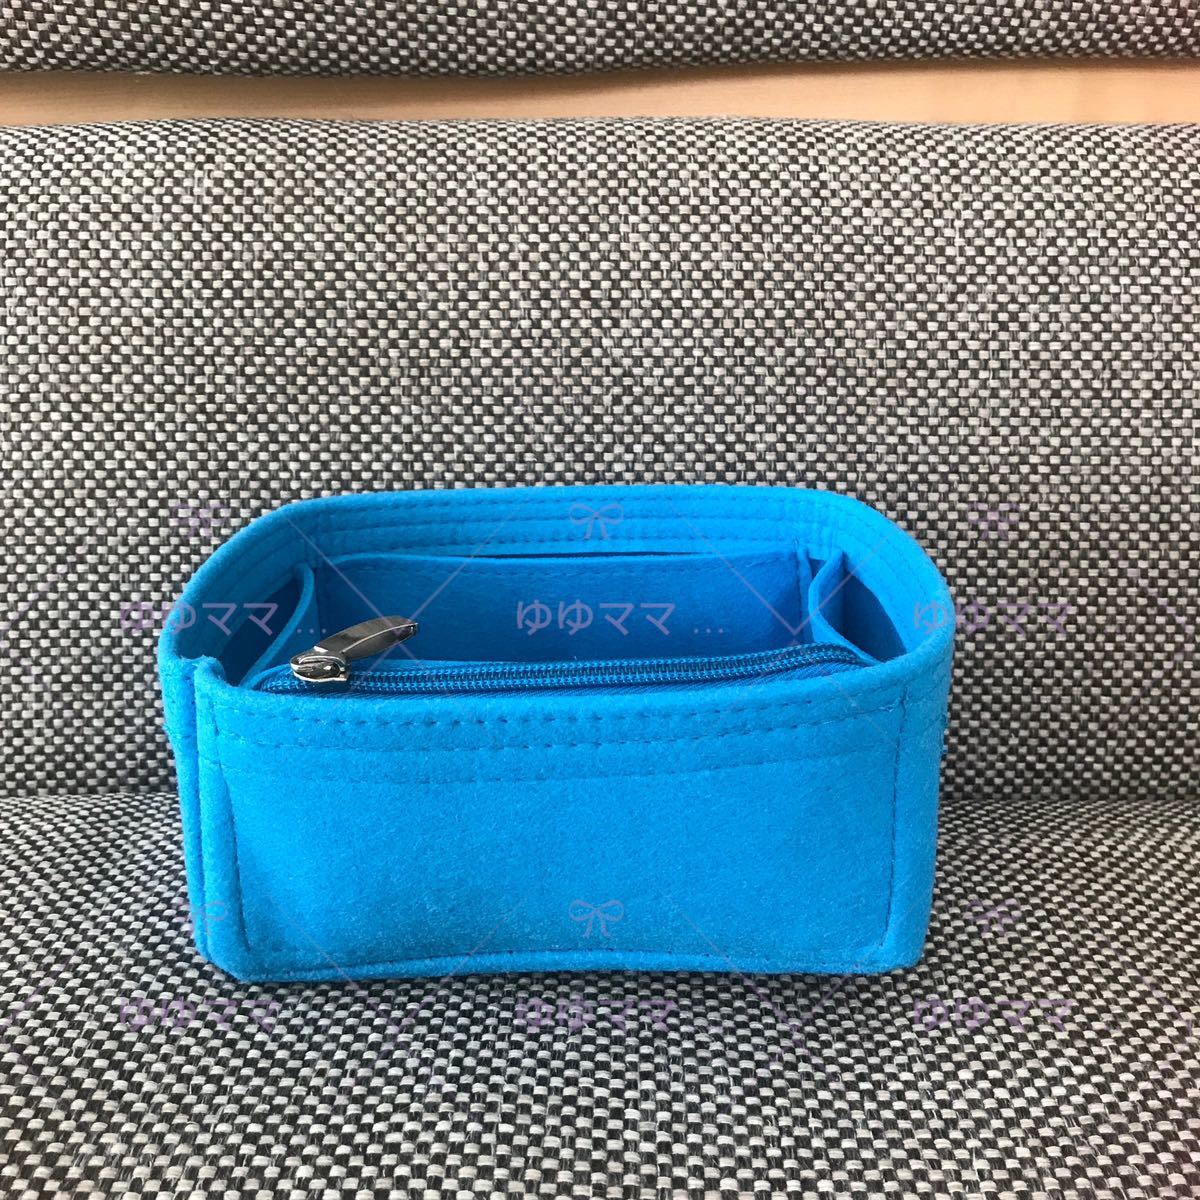  новый товар  сумка ... сумка 18PM для ...  синий   цвет 